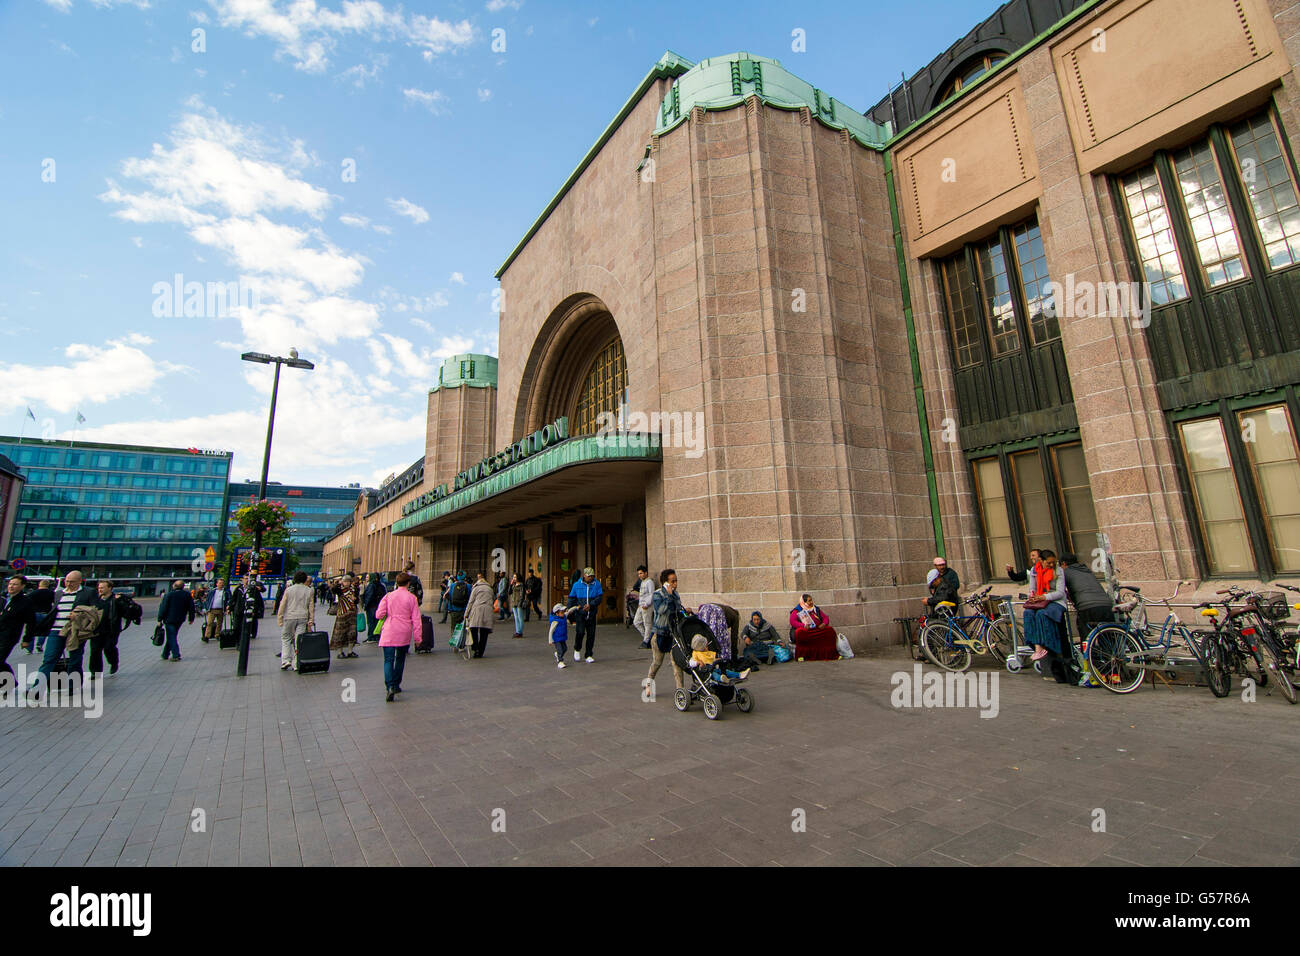 HELSINKI, Finlandia - 13 de junio, 2016: la estación central de Helsinki es un hito reconocido ampliamente en Kluuvi, parte central de H Foto de stock